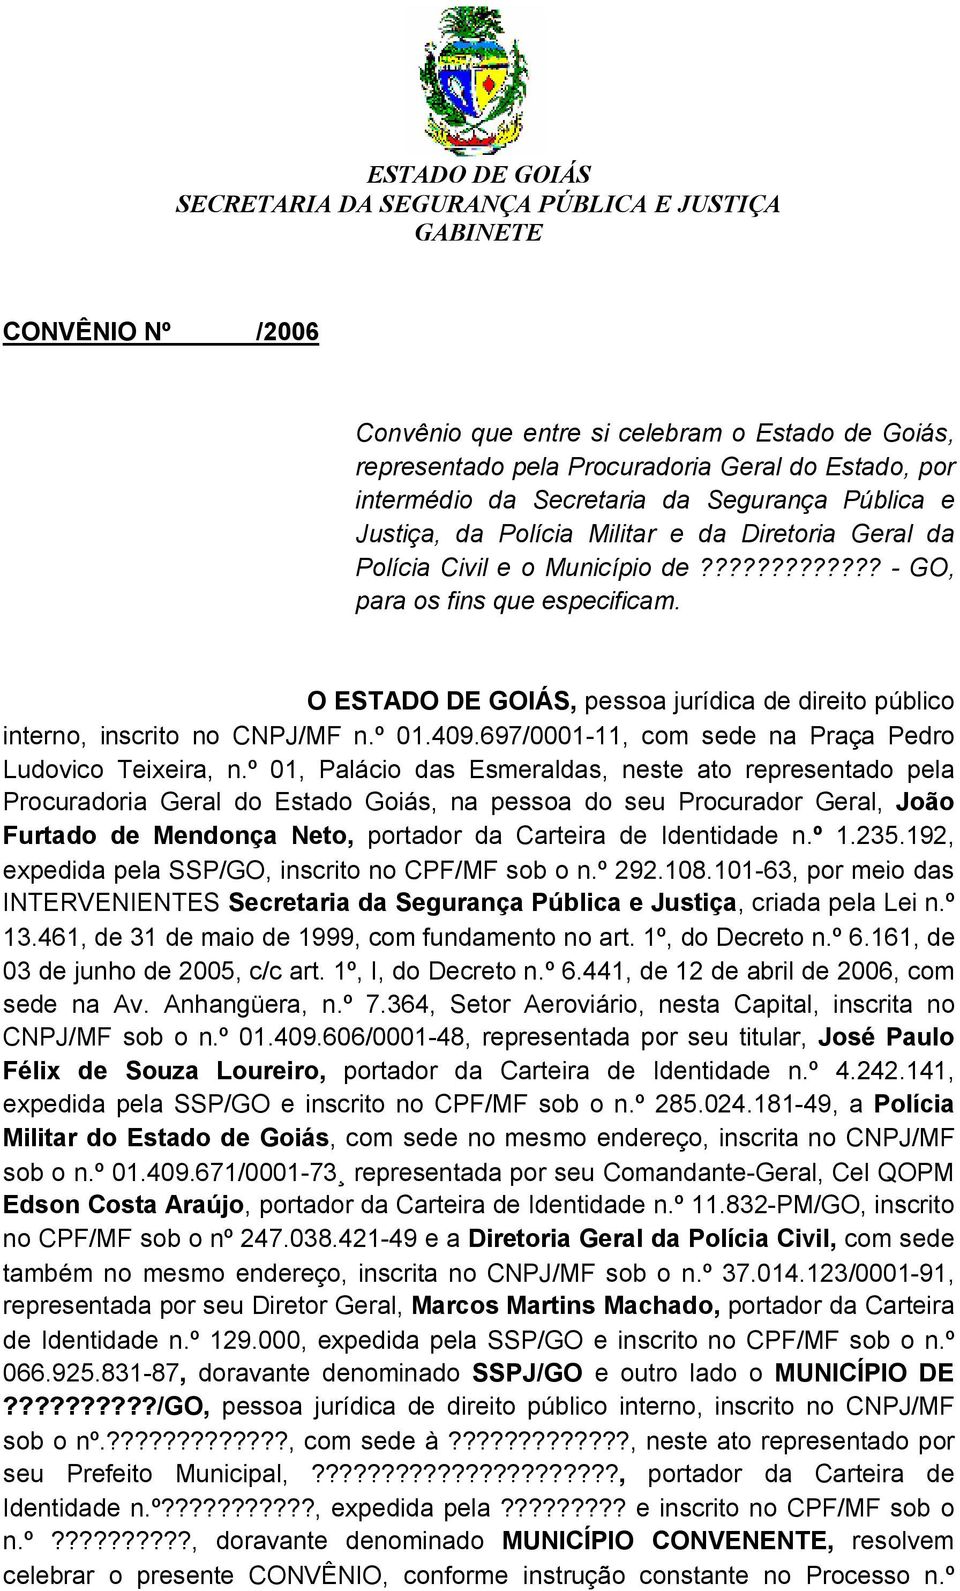 O ESTADO DE GOIÁS, pessoa jurídica de direito público interno, inscrito no CNPJ/MF n.º 01.409.697/0001-11, com sede na Praça Pedro Ludovico Teixeira, n.